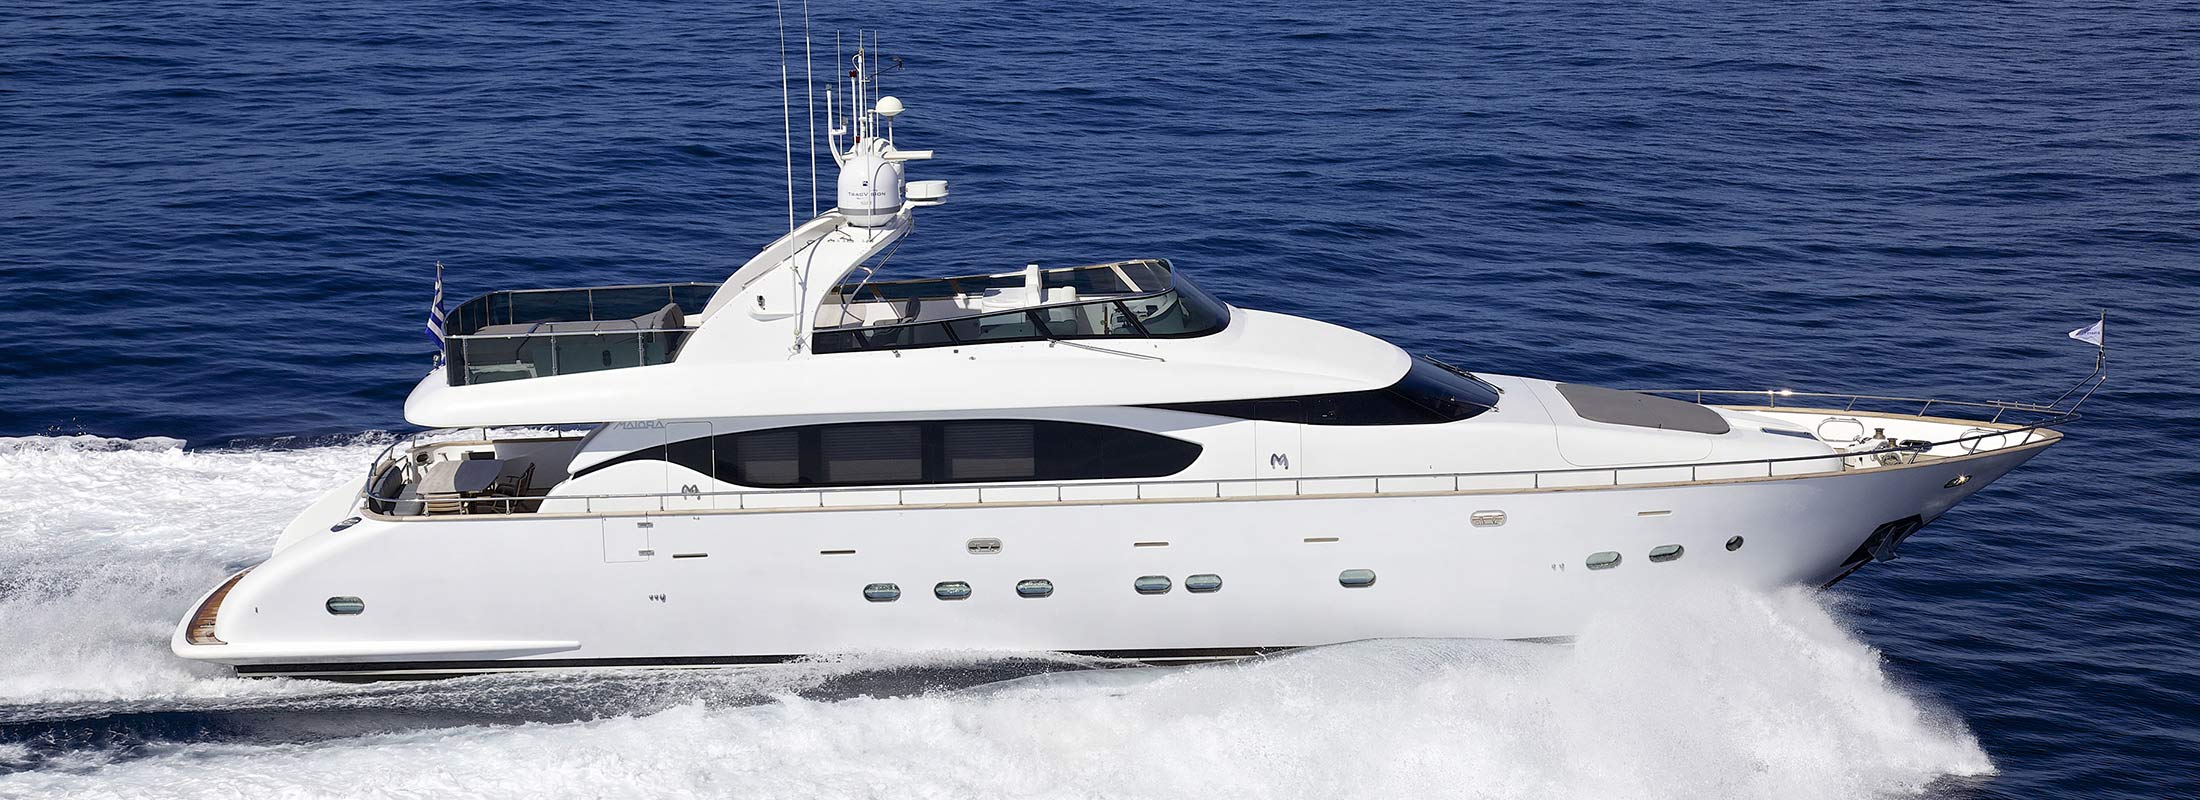 Cudu Motor Yacht for Charter Mediterranean slider 1